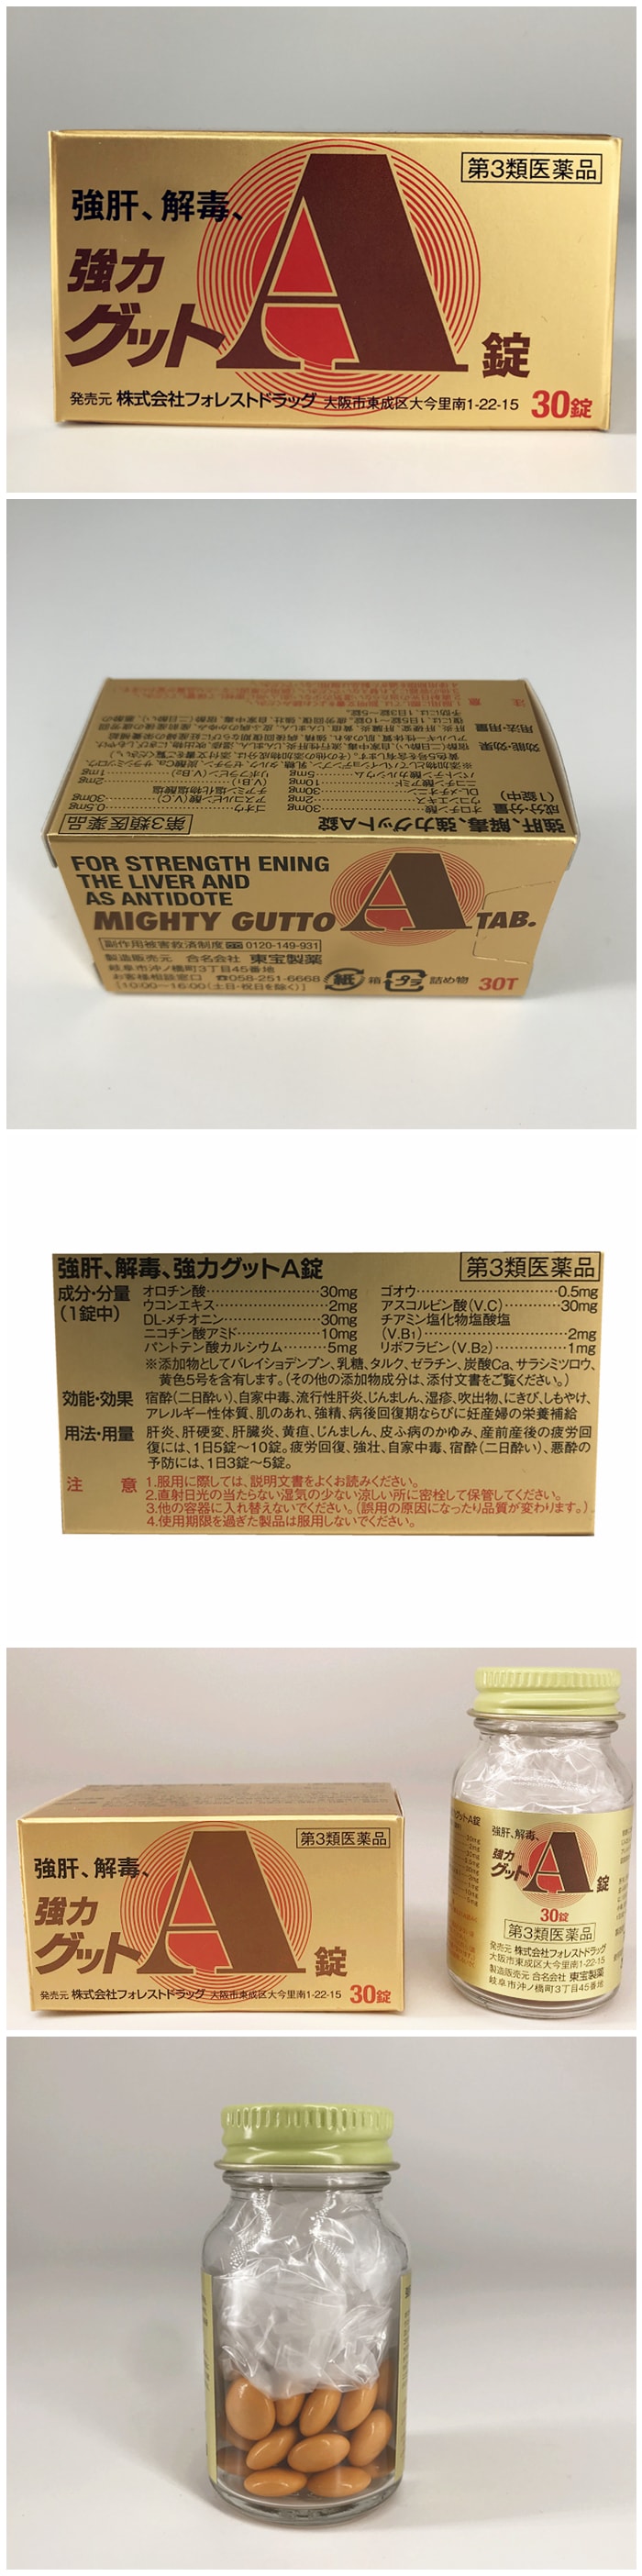 【日本直邮】日本 MIGHTY GUTTO 强肝解毒 解酒丸 30粒